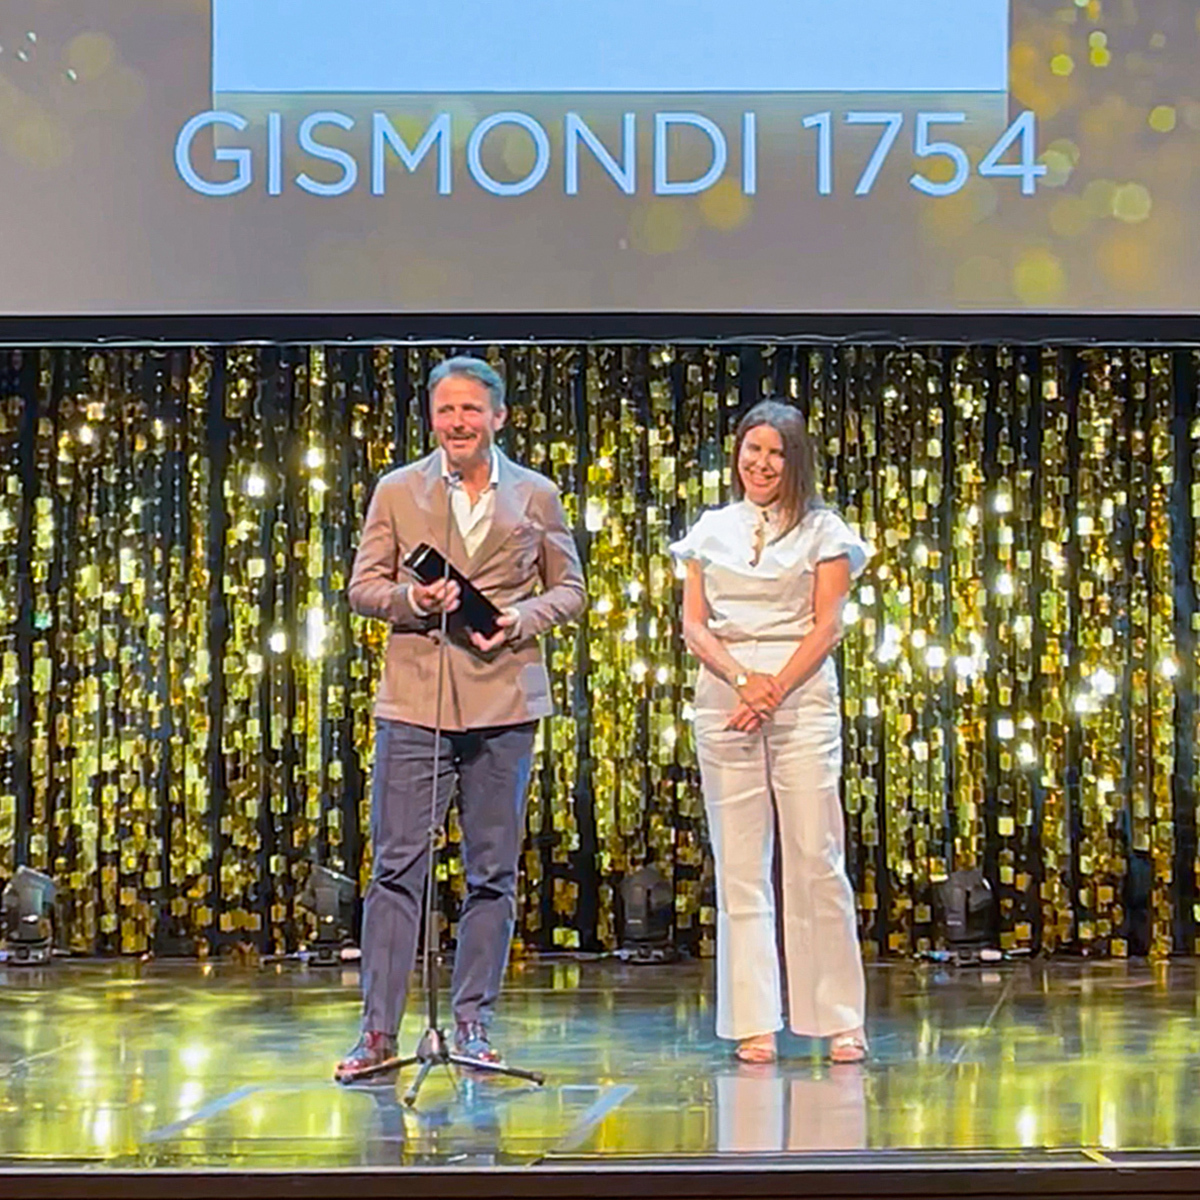 Gismondi1754 couture 2022 award ceremony